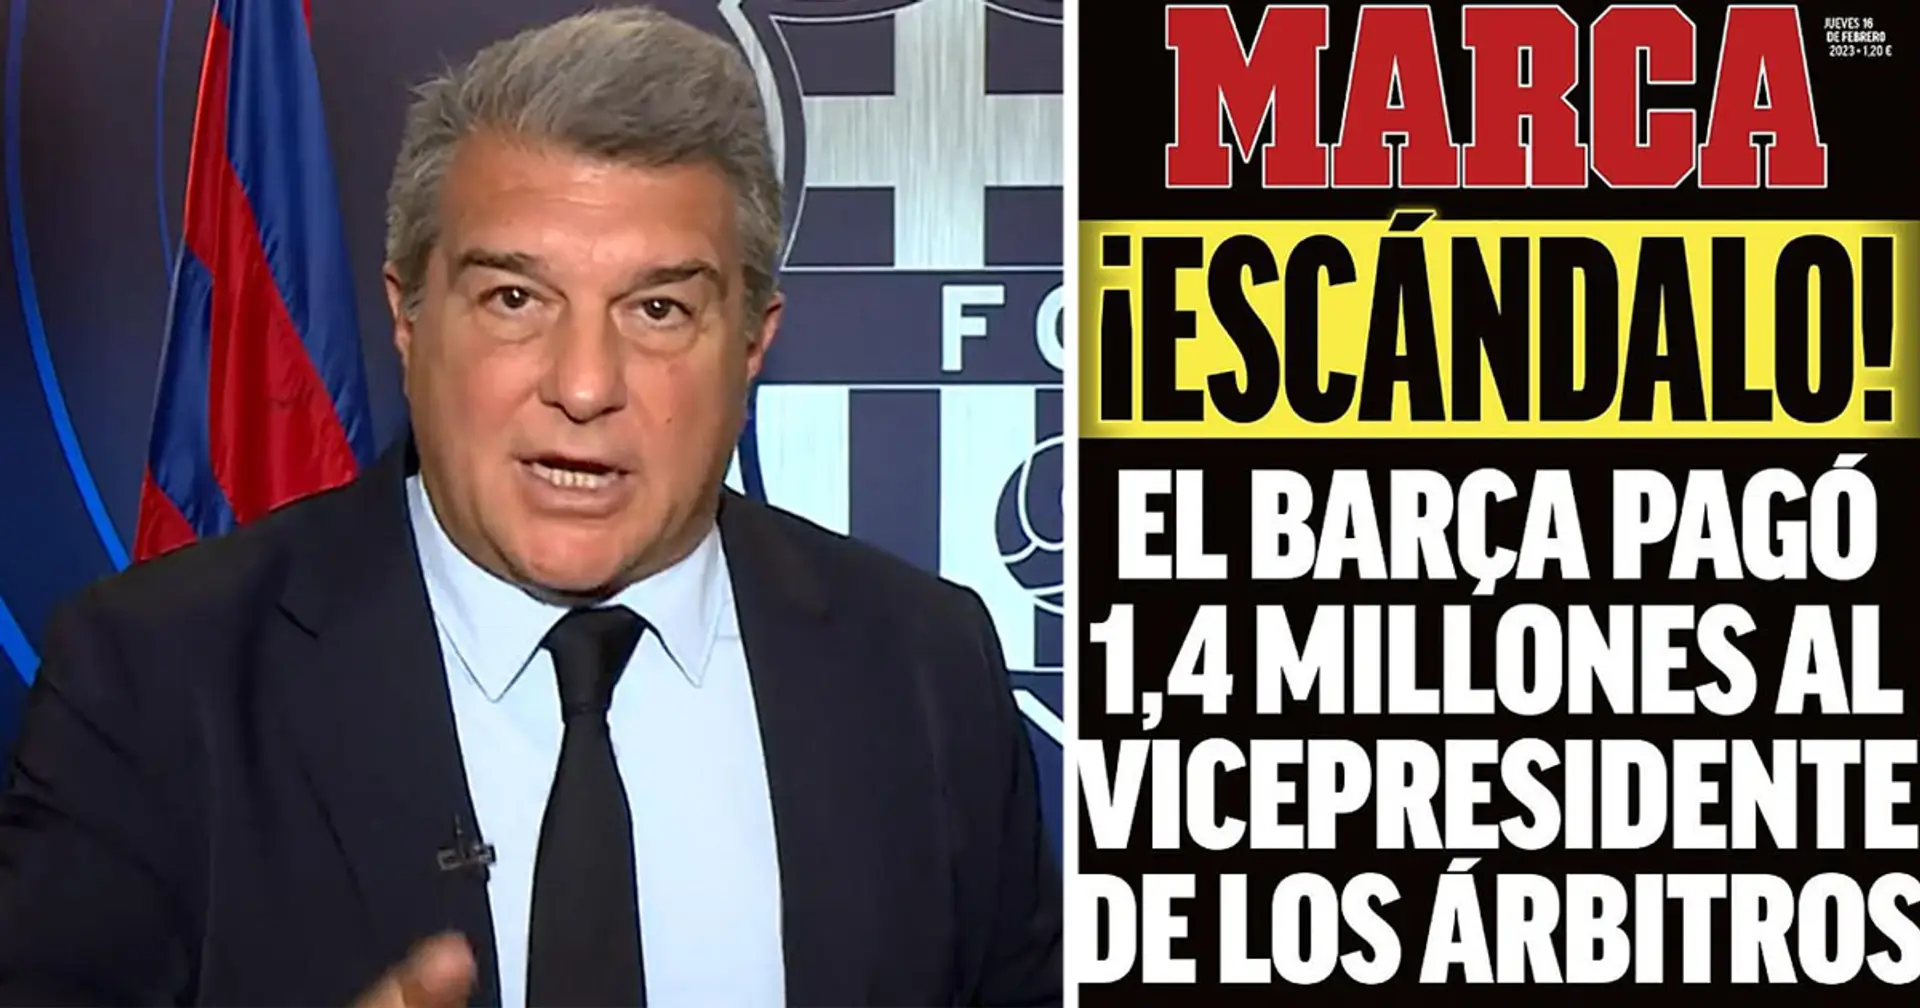 El Barça presenta demandas contra 5 periodistas después de que la investigación no encuentra evidencia de sobornos a los árbitros